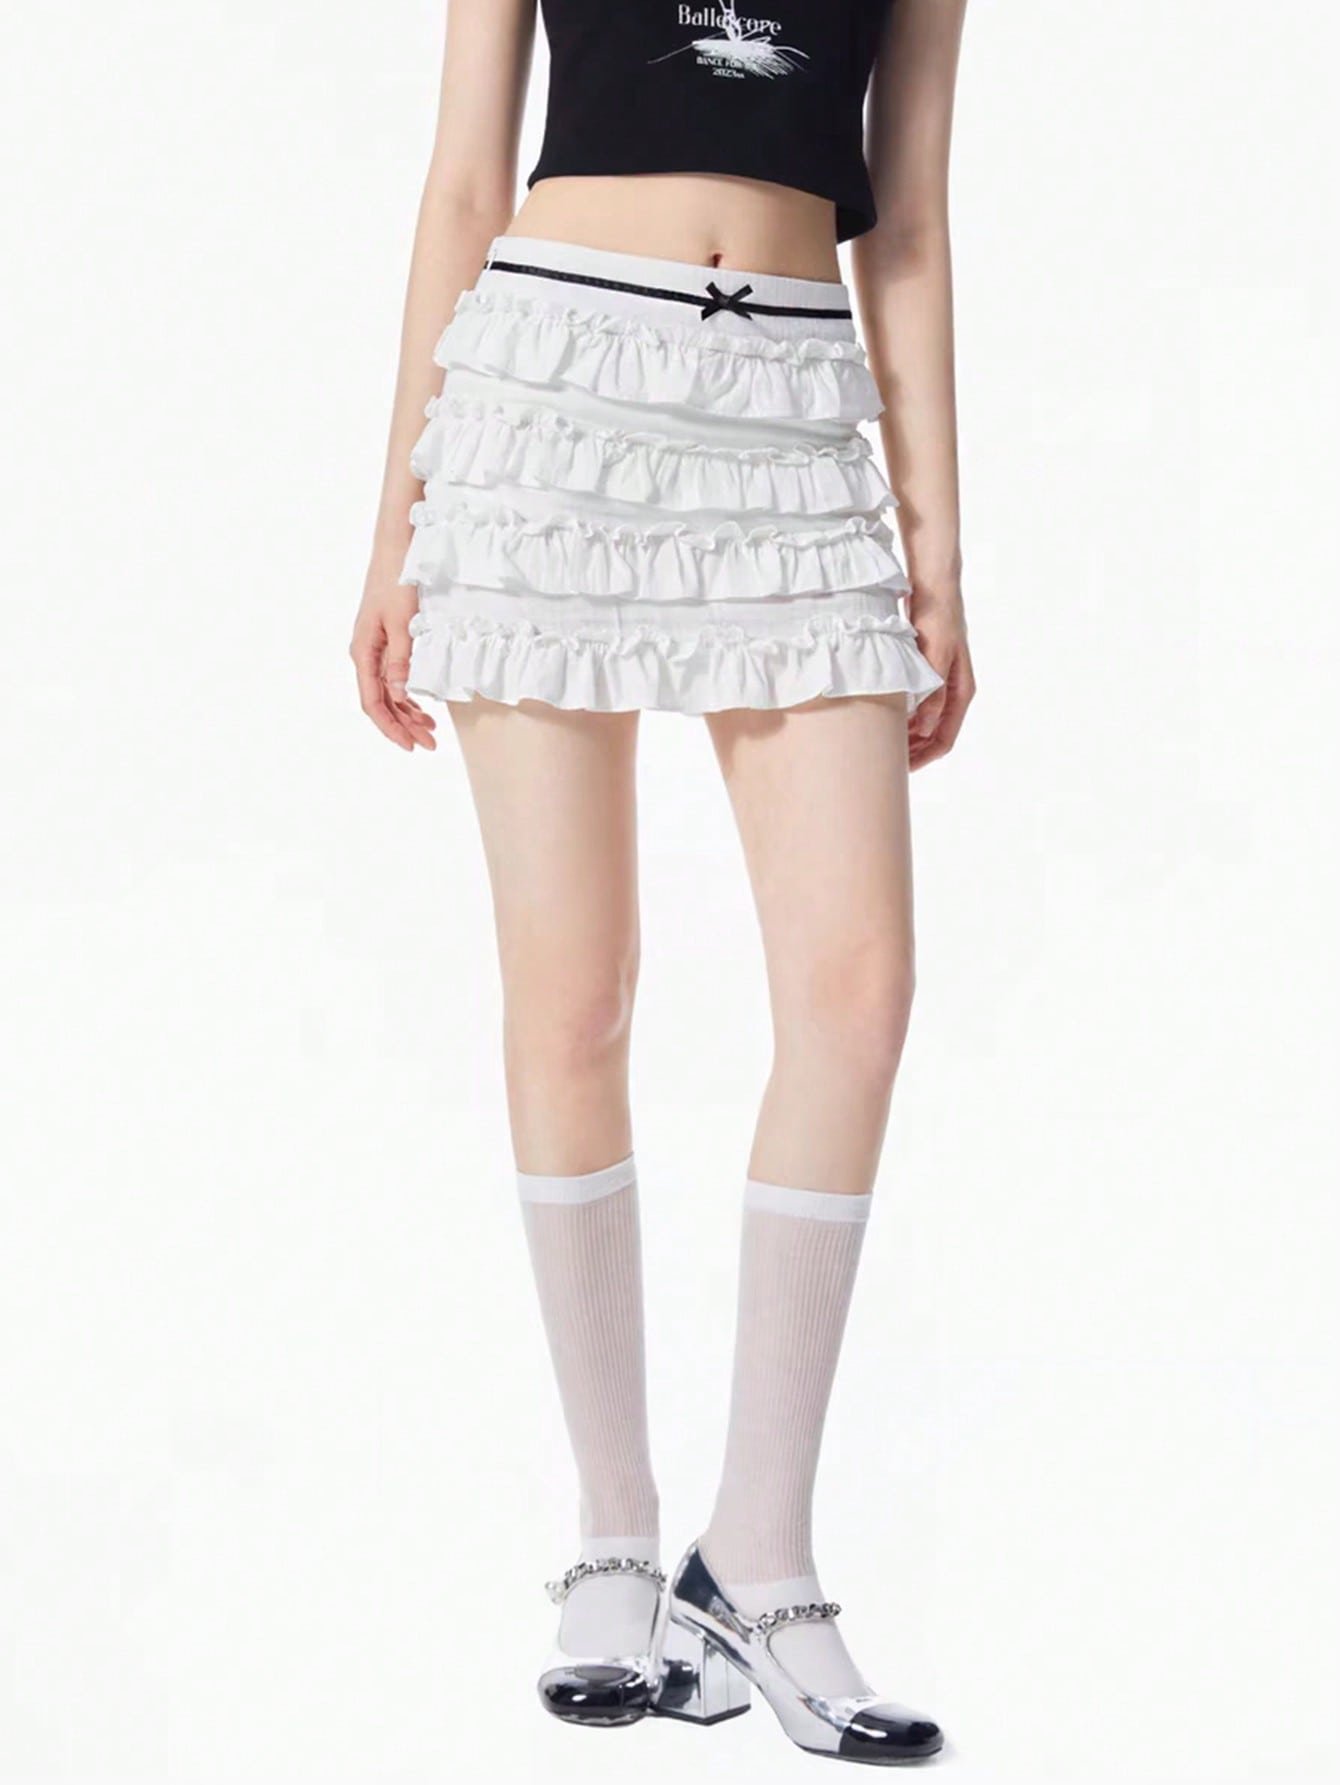 カワイイバレエスタイルのコケットサマースカート、ホワイト、レイヤードスカート、夏の愛らしいボトムス